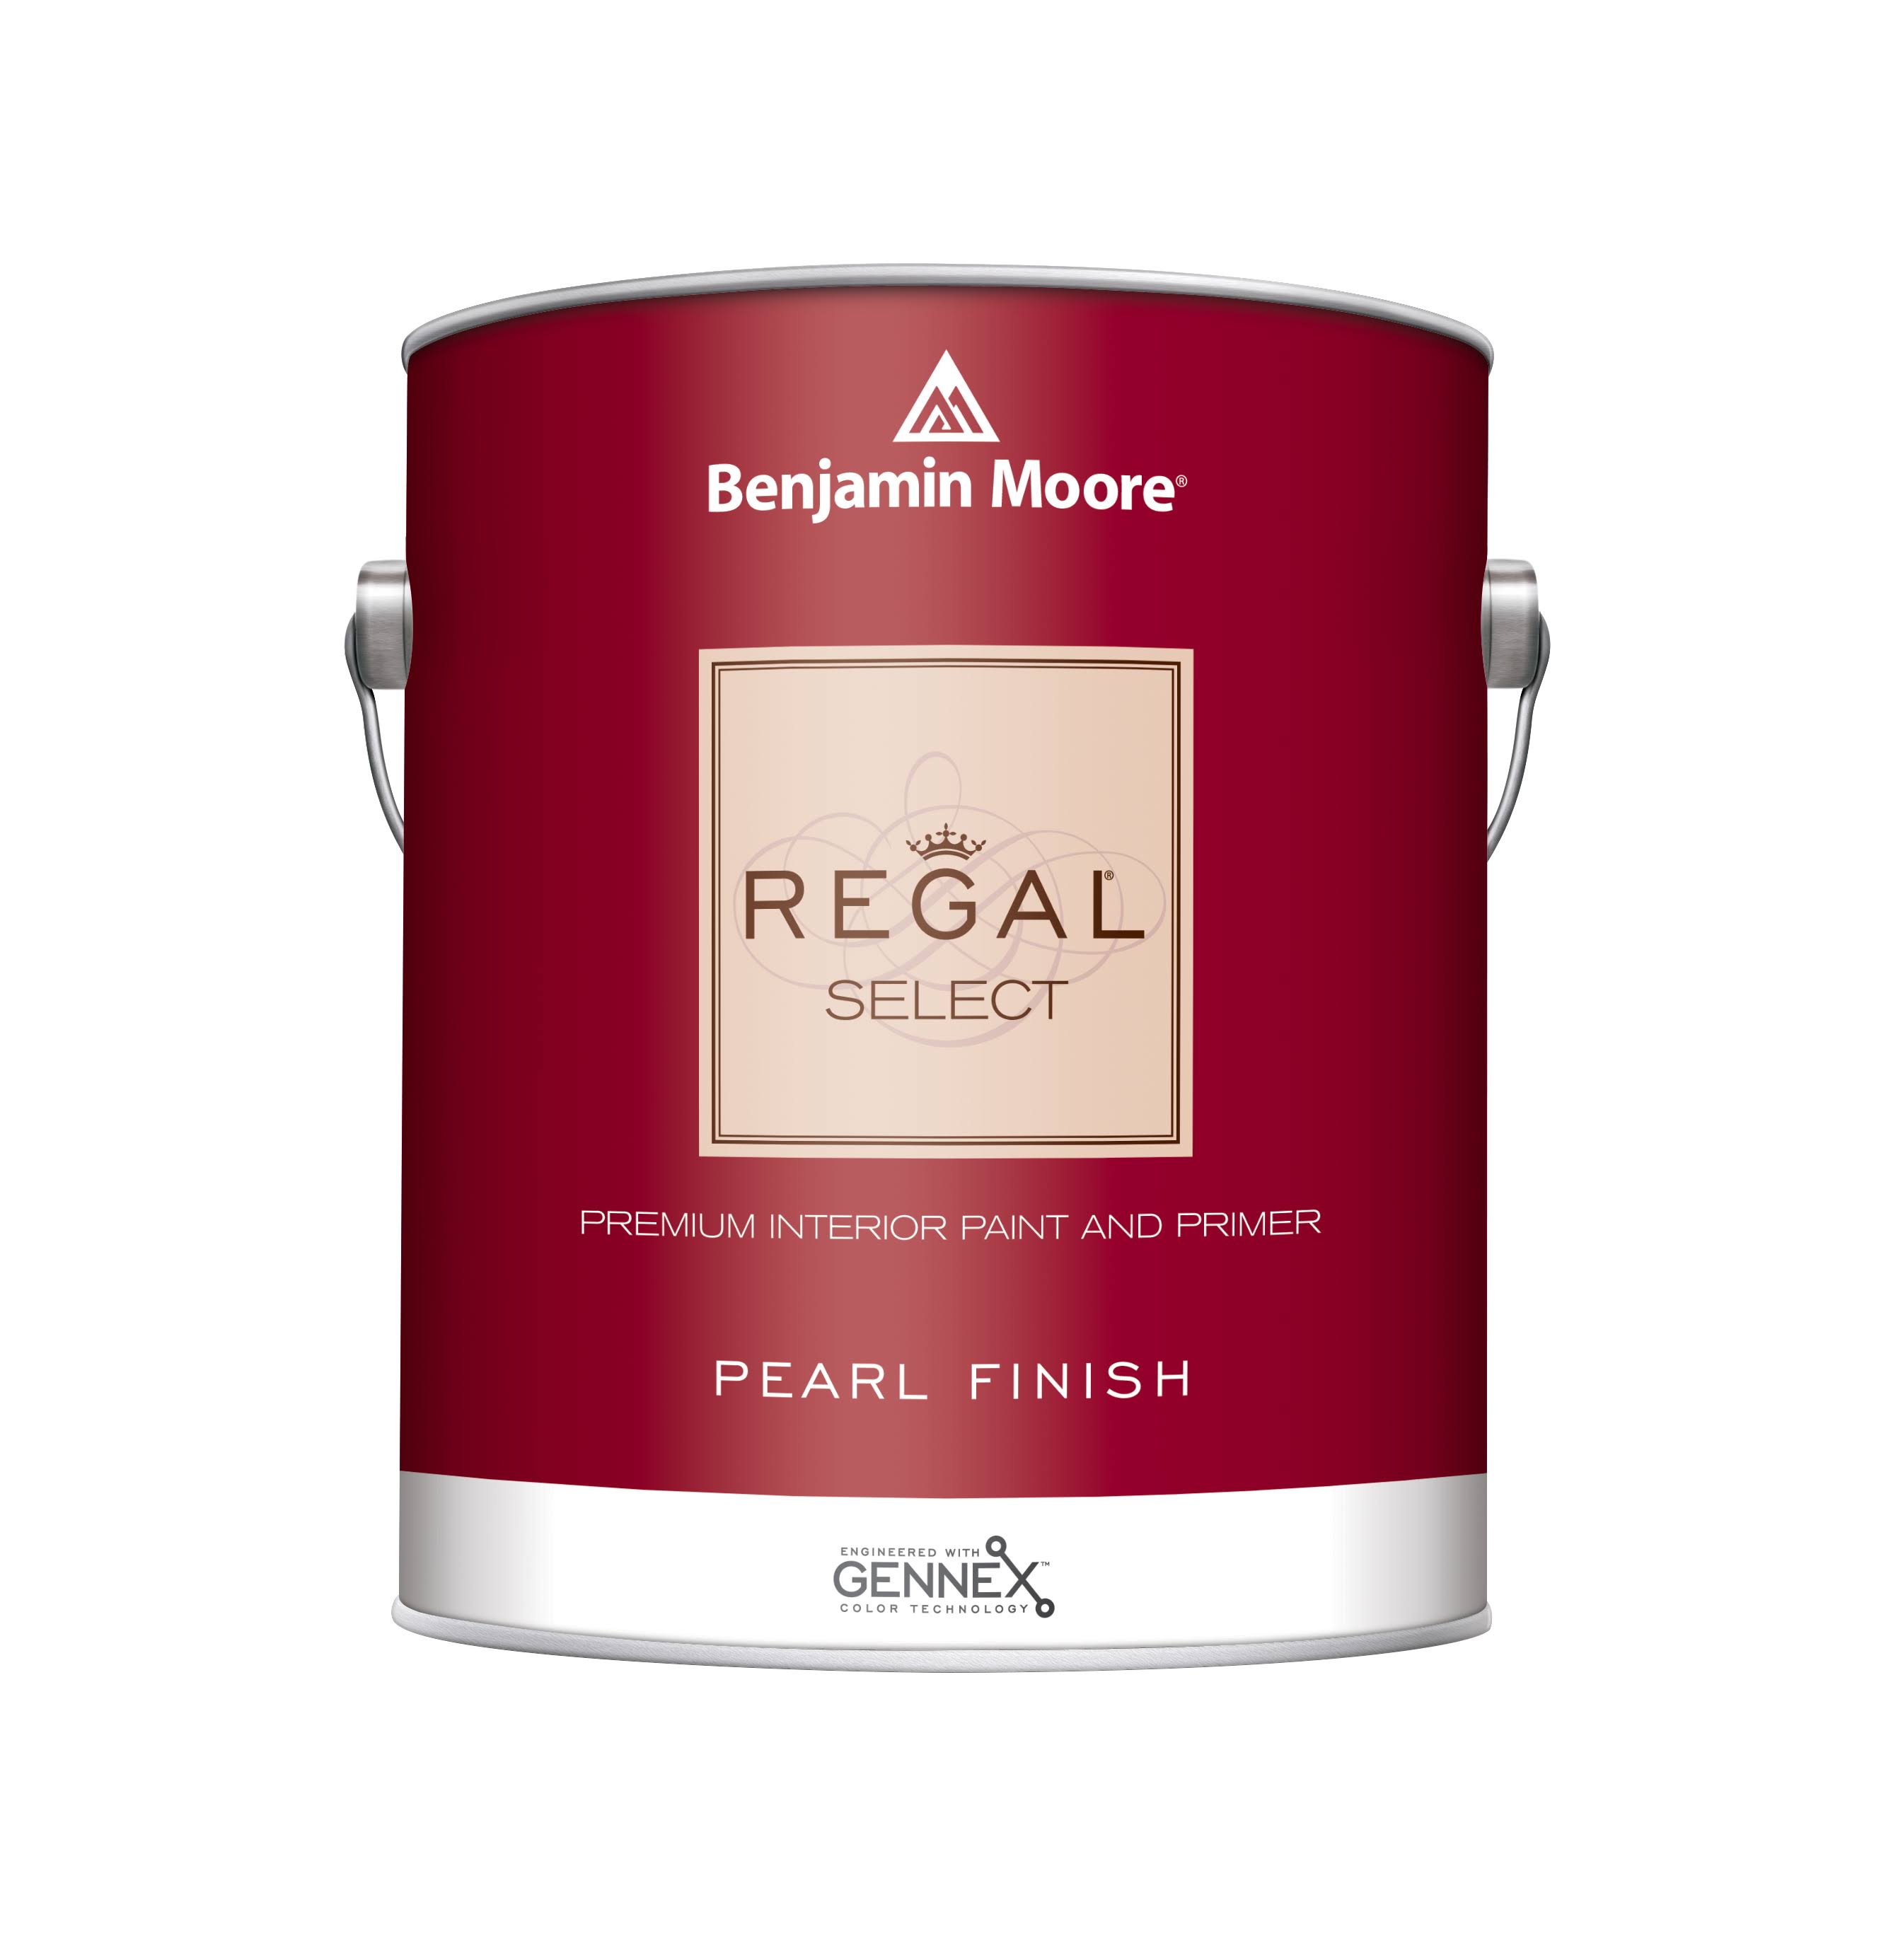 Benjamin Moore Regal Select Premium Interior Paint and Primer - Pearl Finish